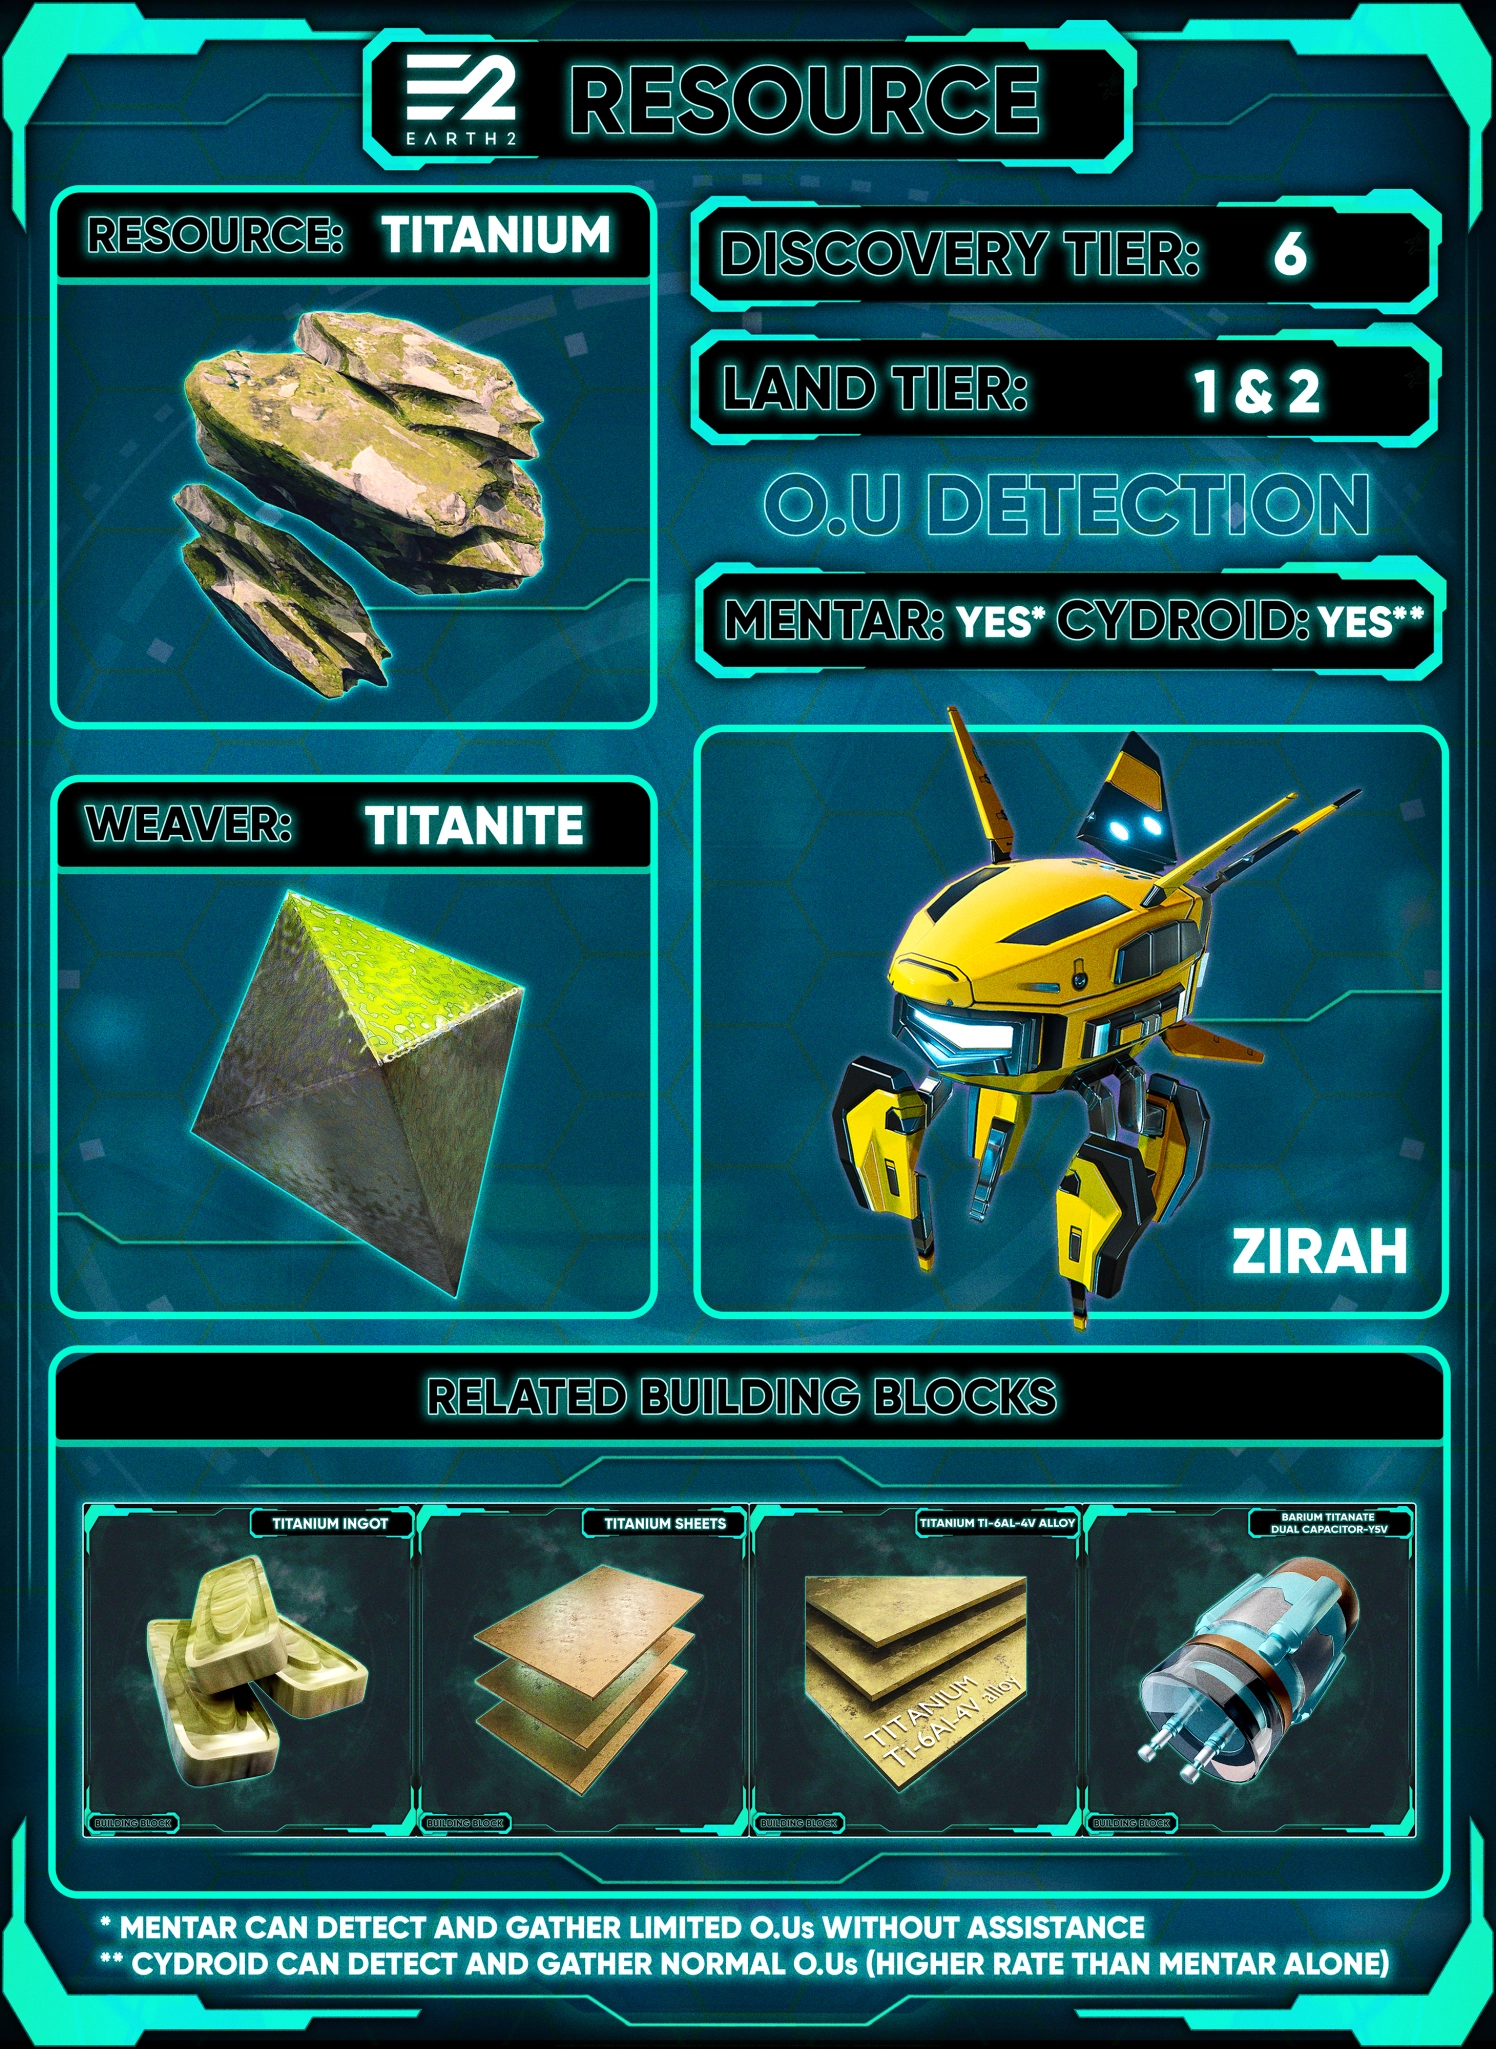 Titanium's related building blocks